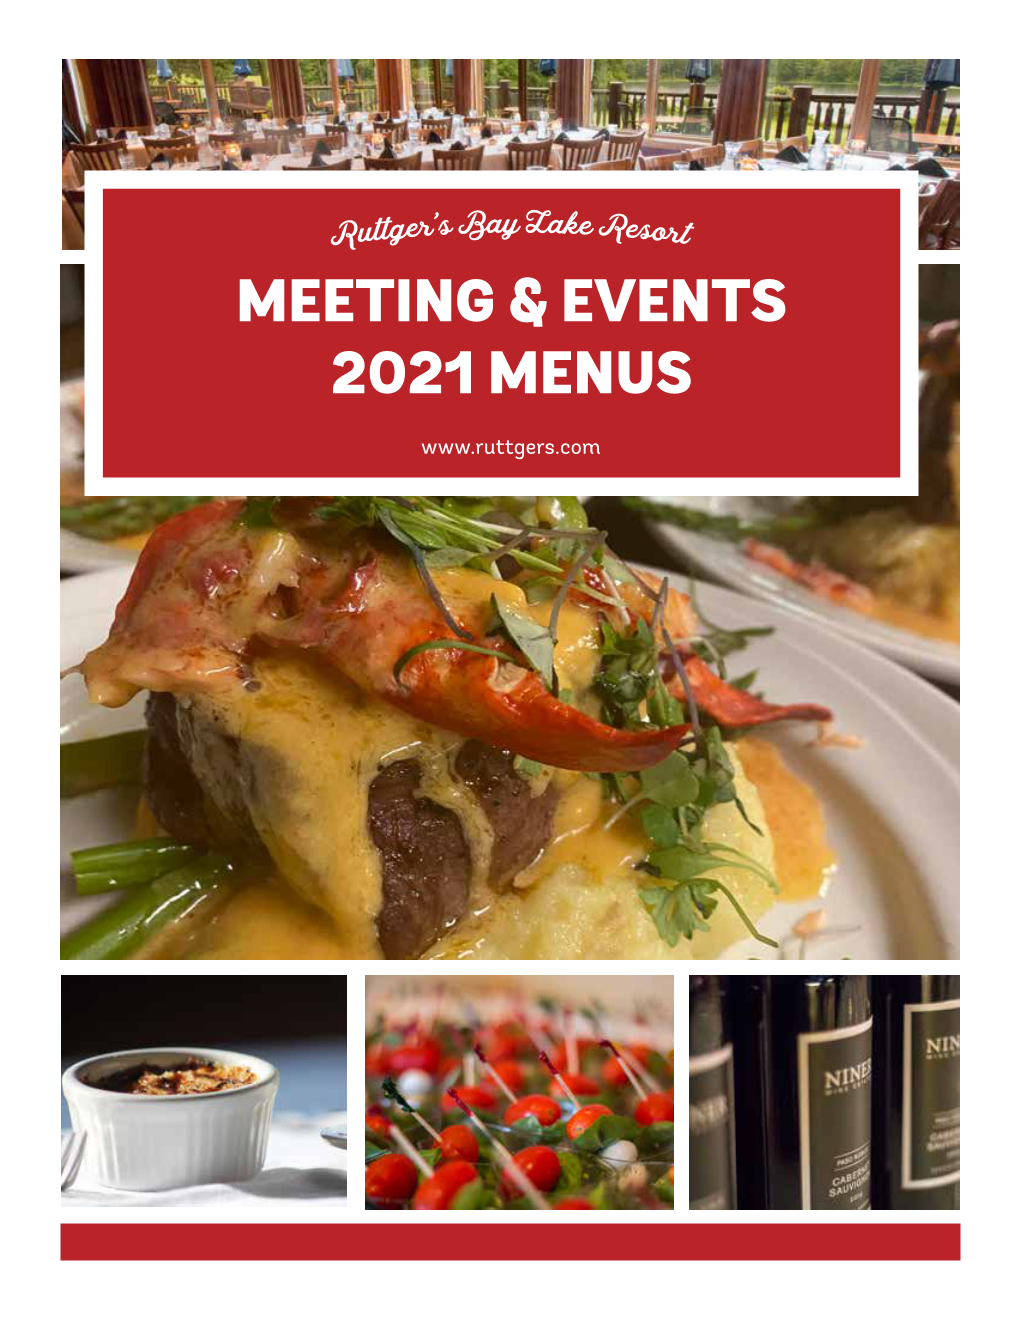 Meeting & Events 2021 Menus